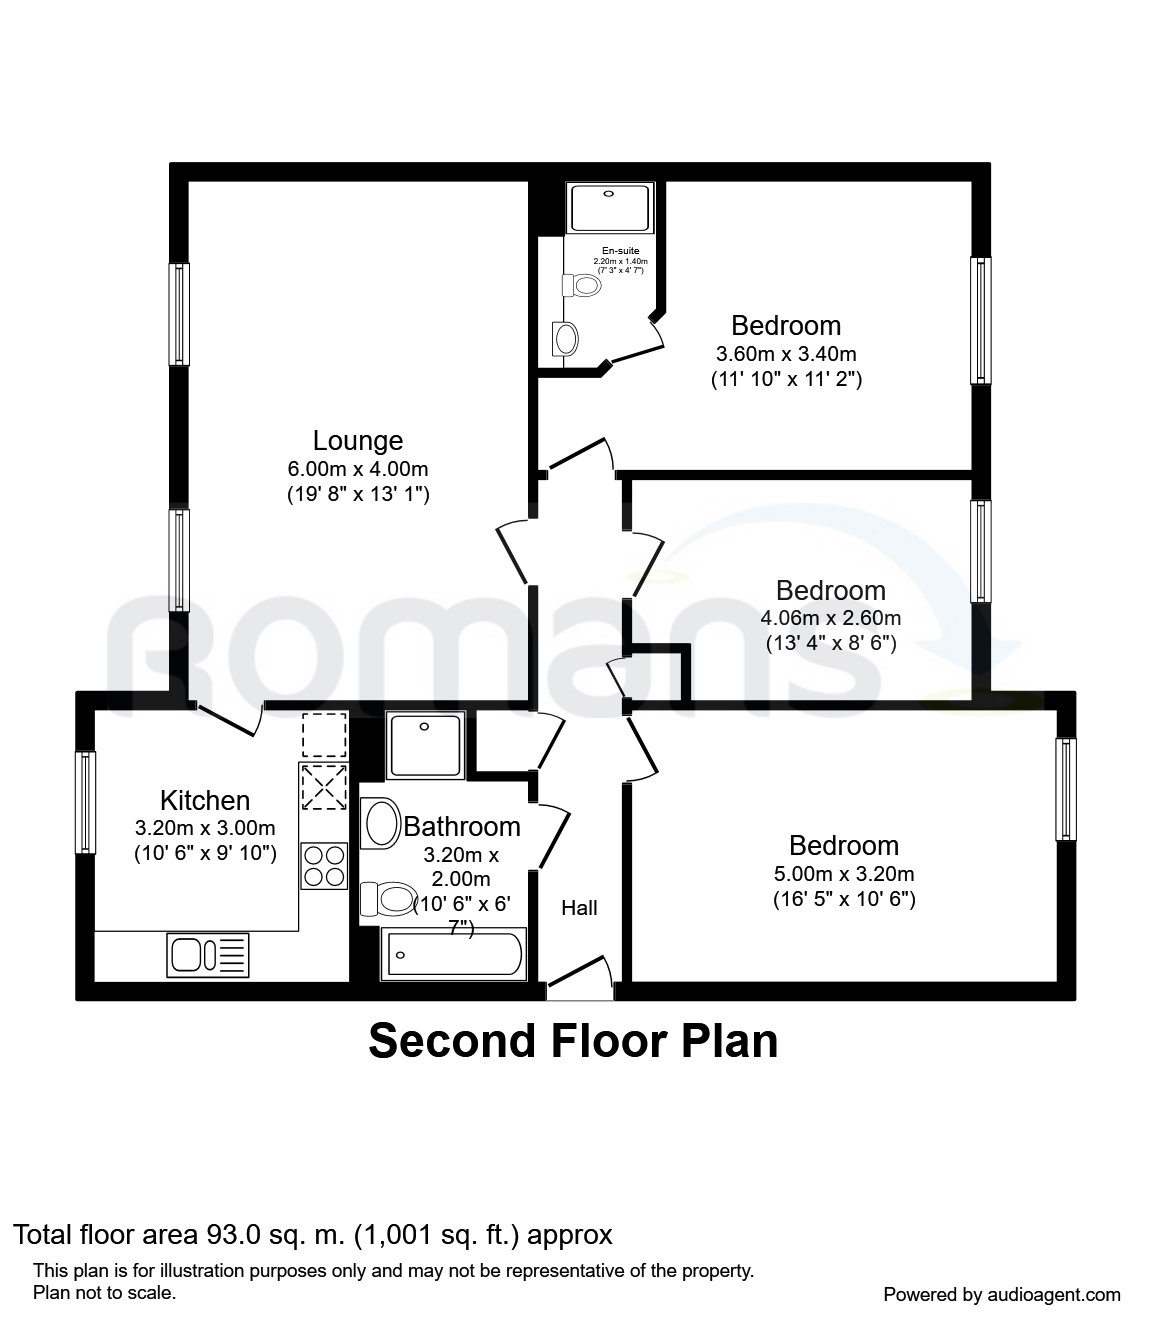 3 Bedrooms Flat to rent in Trevelyan Court, Windsor SL4